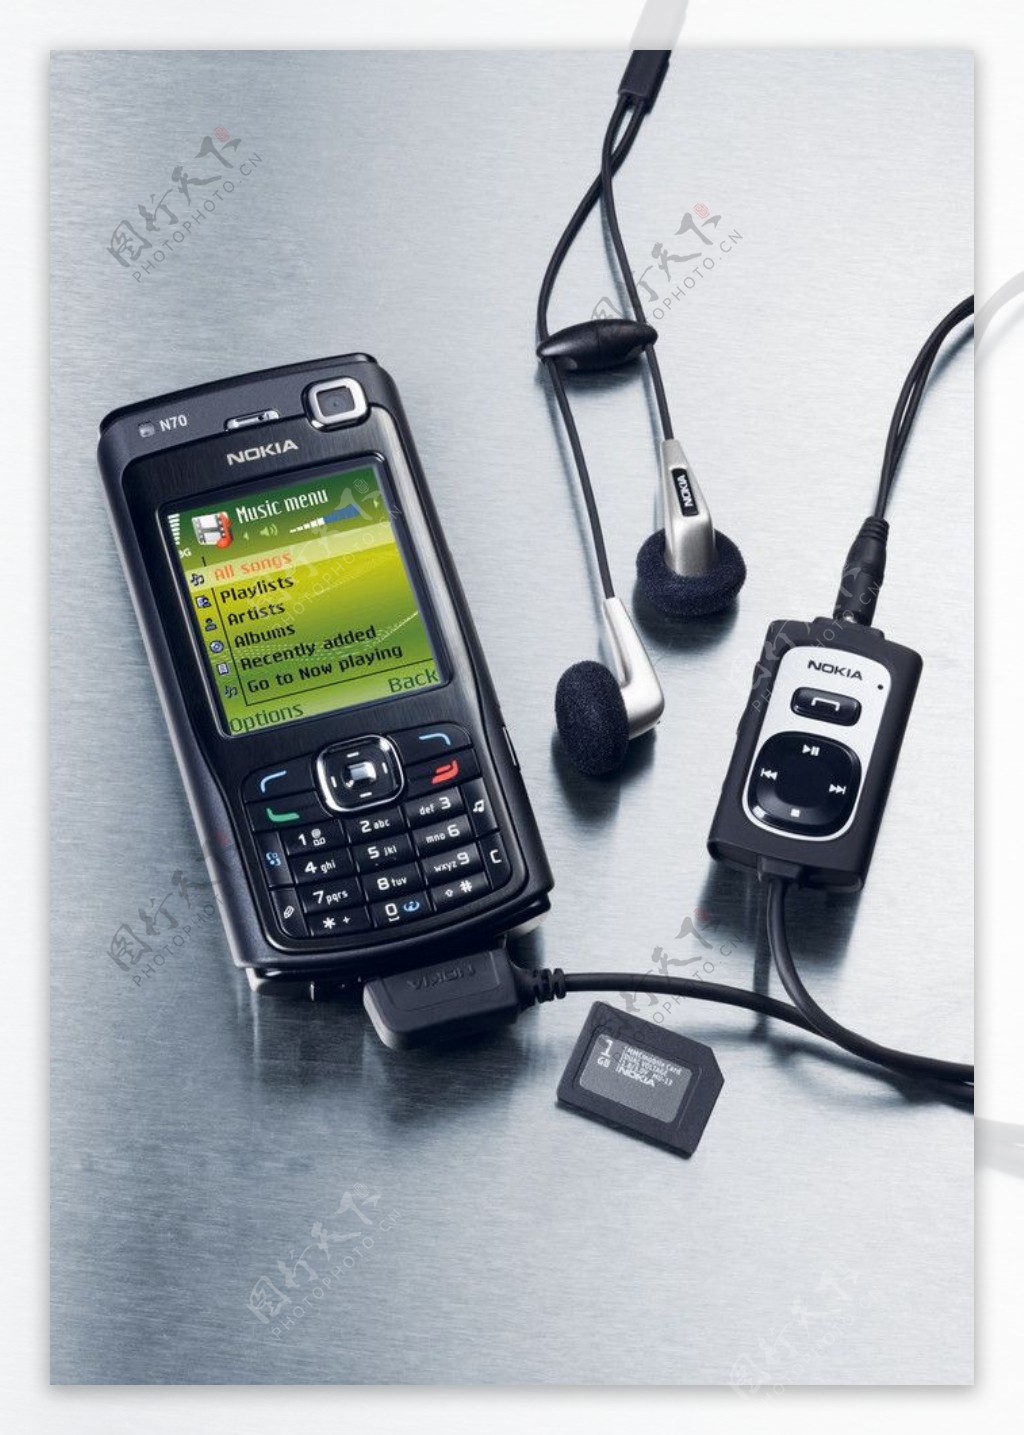 诺基亚N70手机带音乐播放器图片